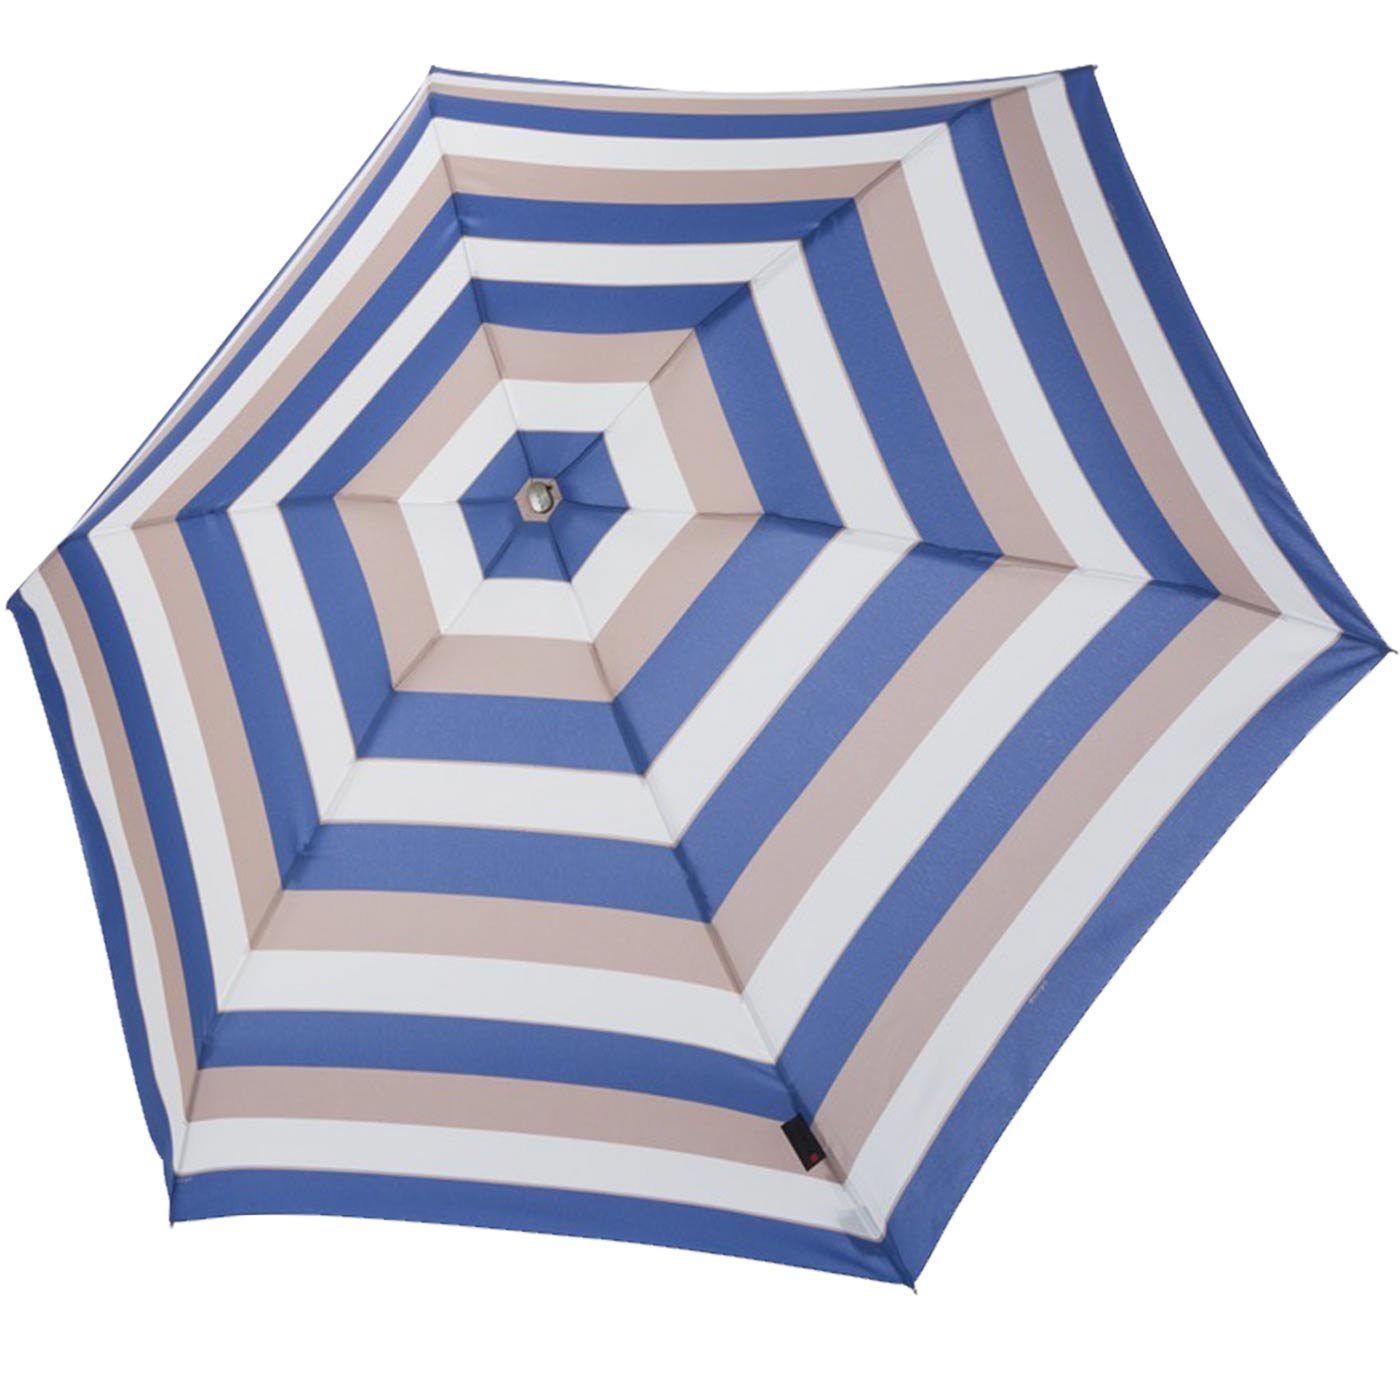 leicht, leichter, Knirps® für klein guter und kompakter ein Damen, Schirm Taschenregenschirm besonders Notfallschirm sehr